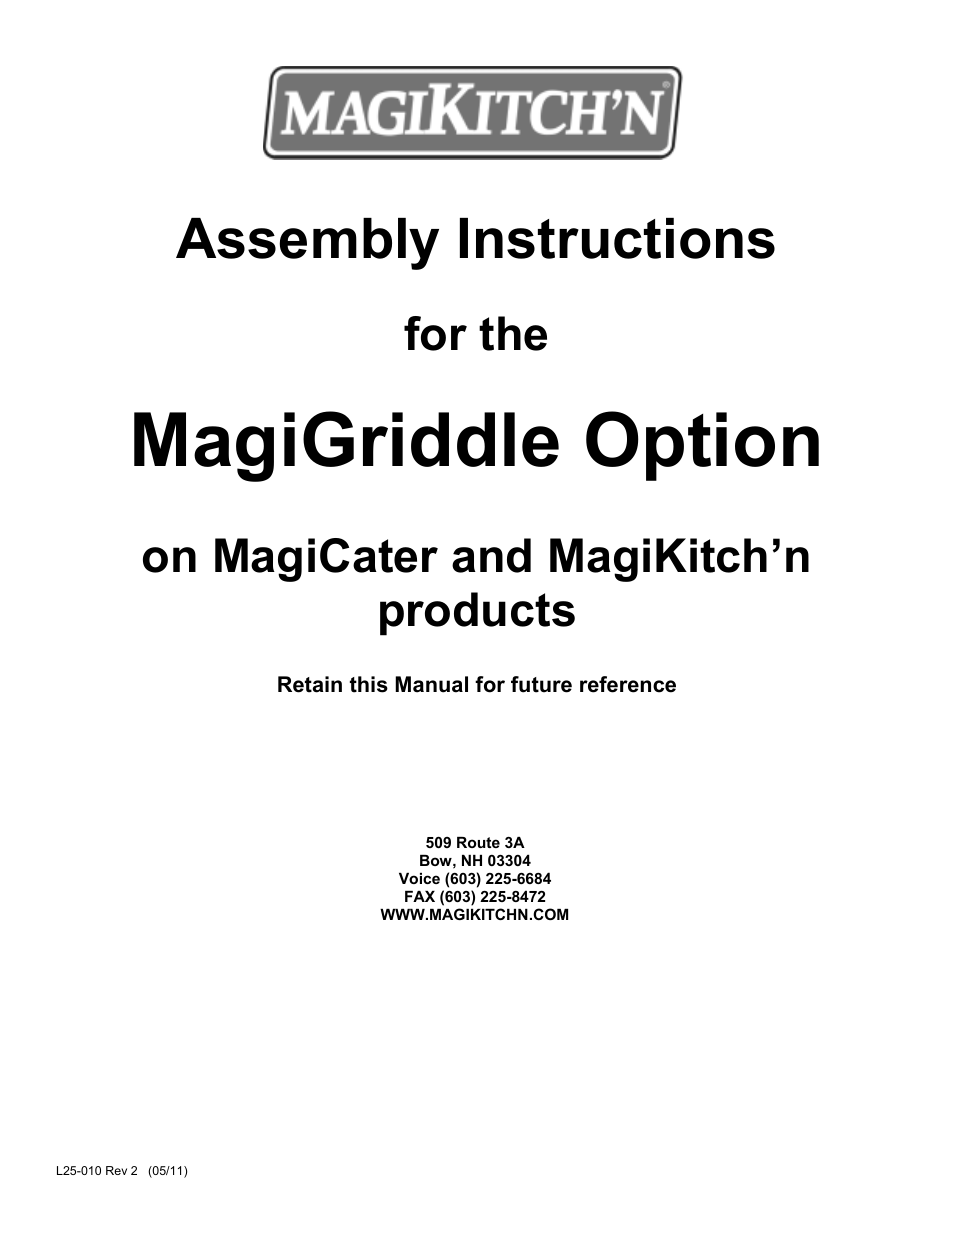 MagiGriddle Option